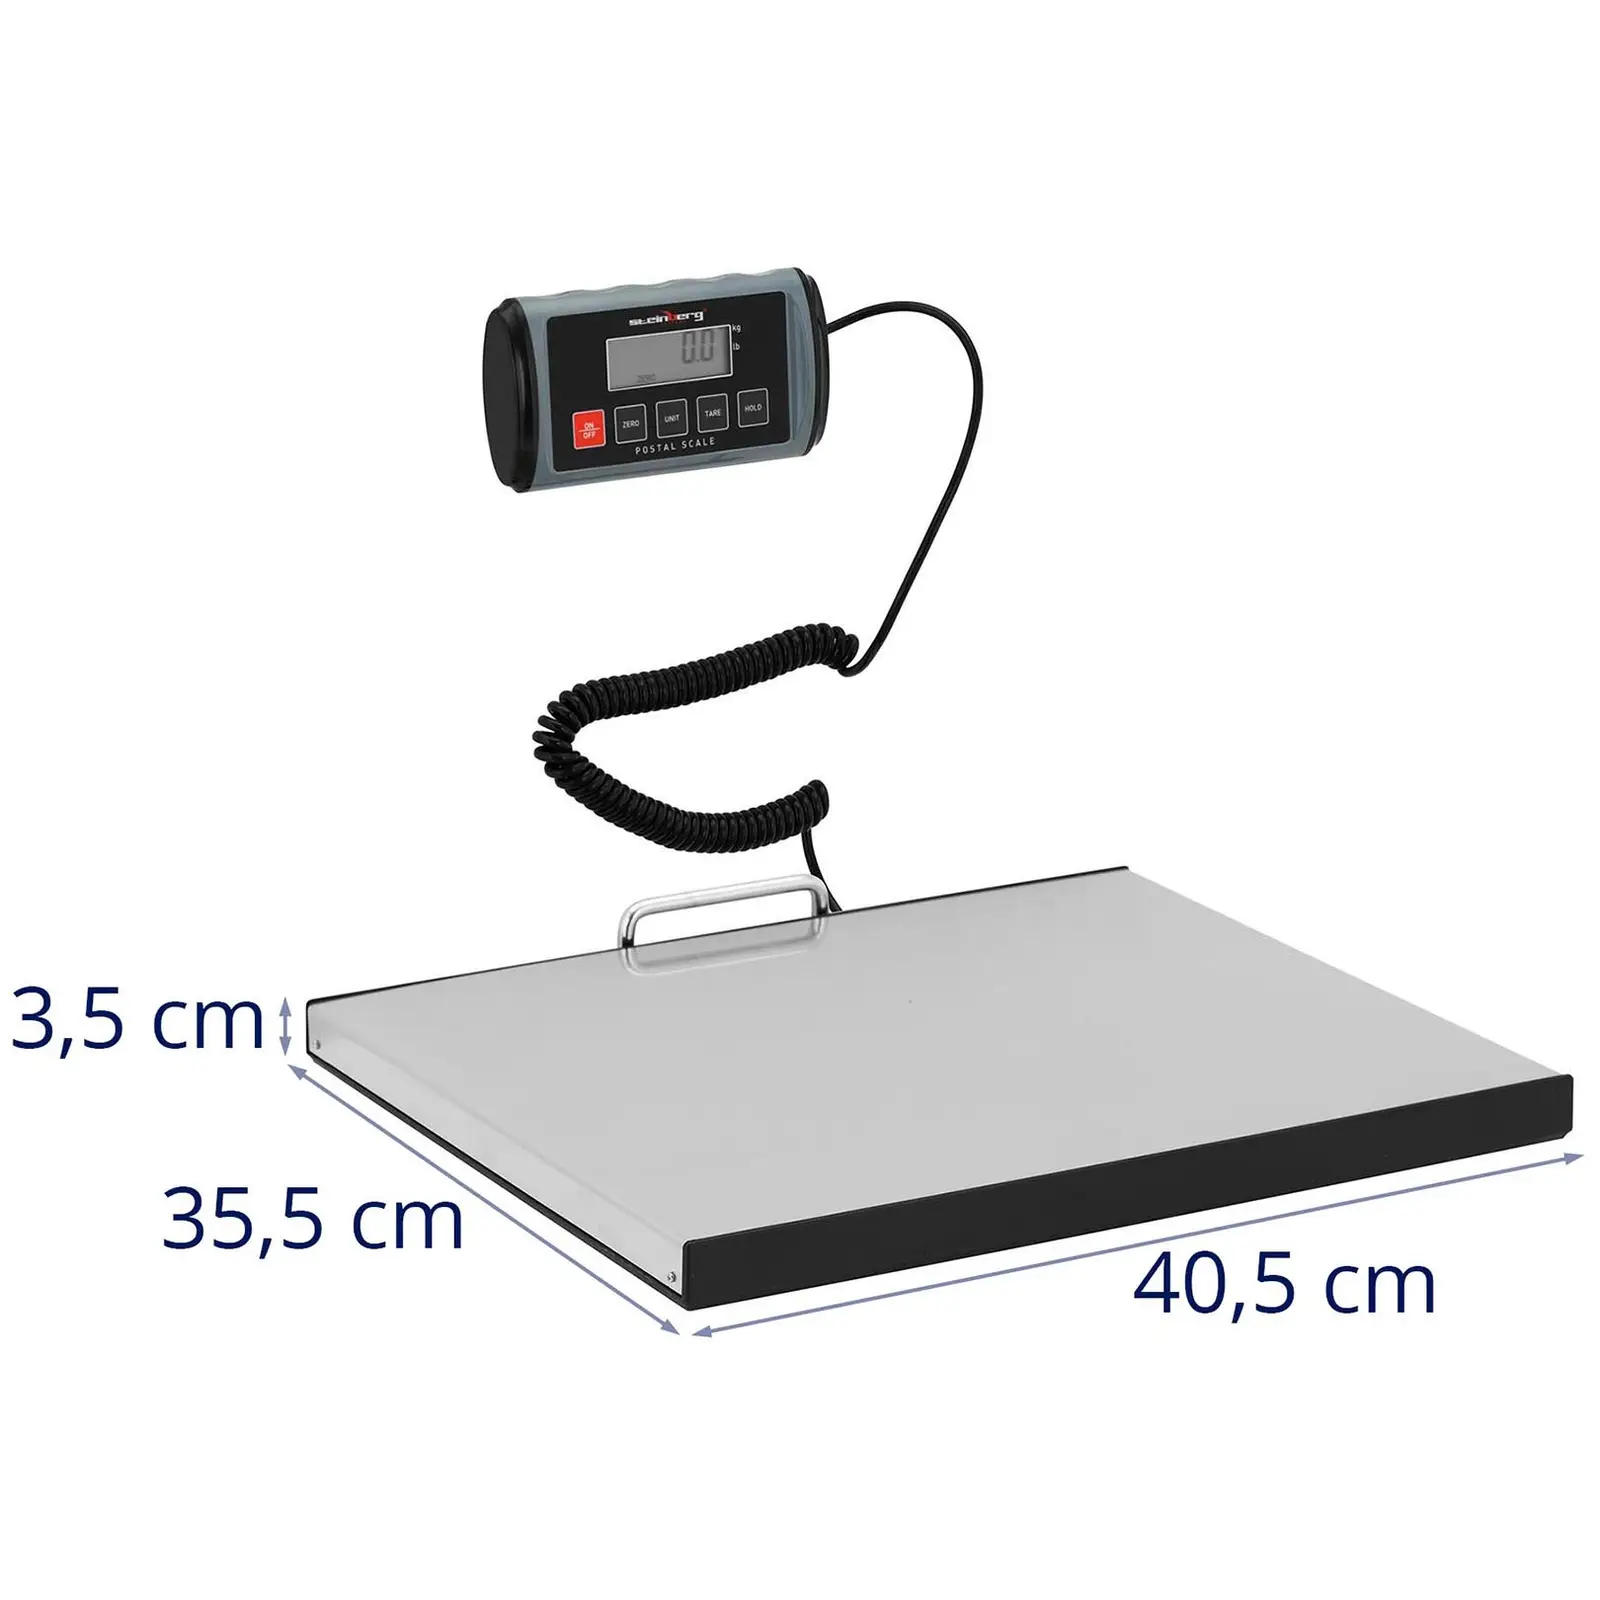 Balança de pacotes - 200 kg / 0,1 kg - 35,5 x 40,5 cm - ext. Visor LCD